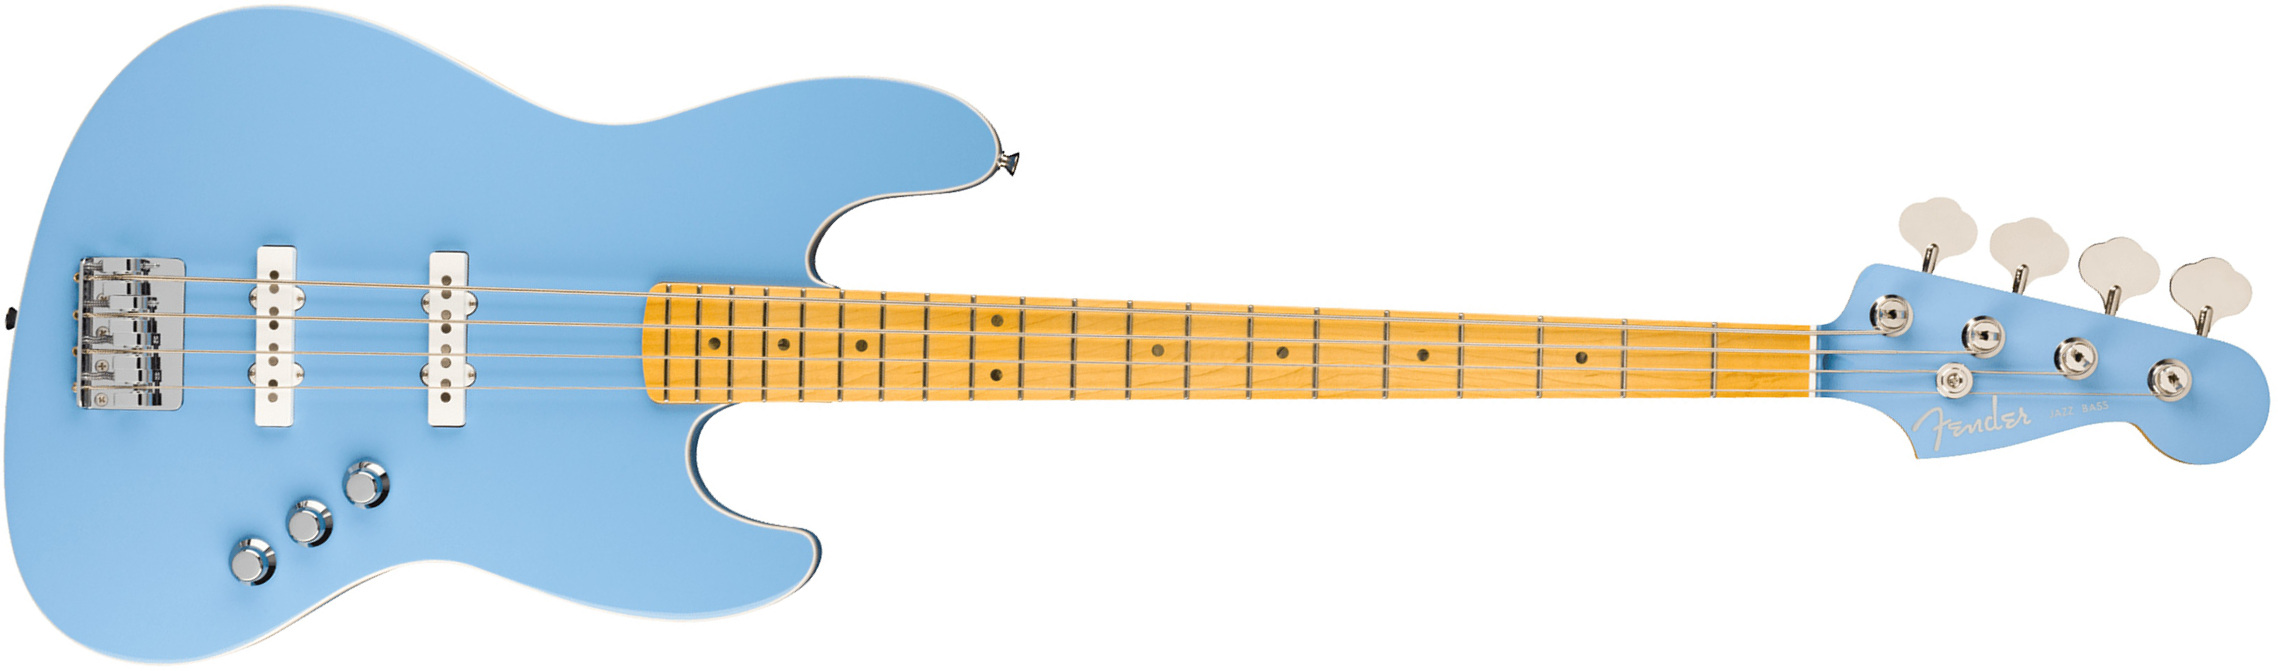 Fender Jazz Bass Aerodyne Special Jap Mn - California Blue - Bajo eléctrico de cuerpo sólido - Main picture